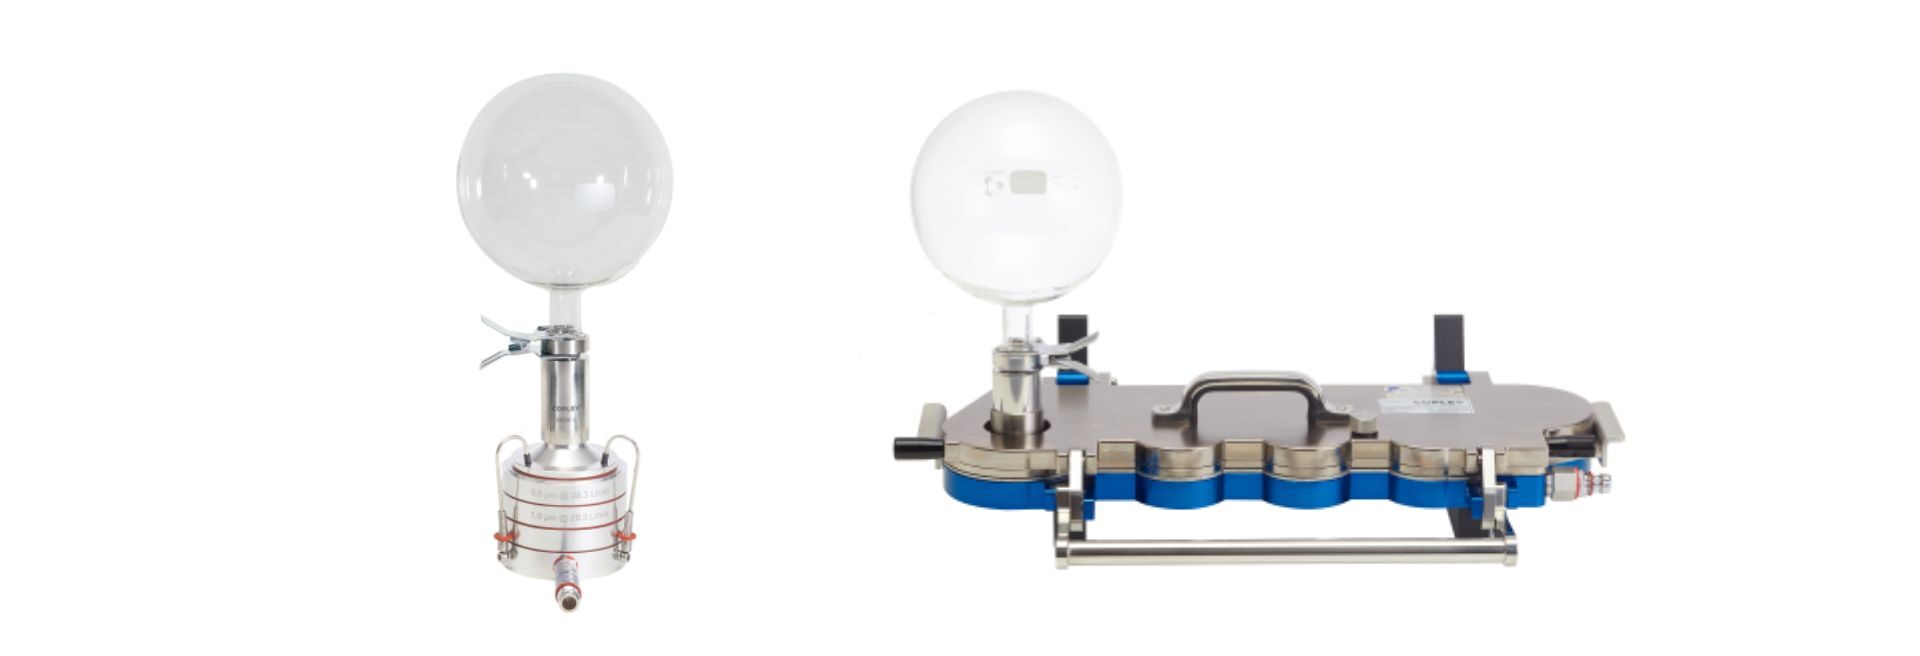 Left: Andersen Cascade Impactor for nasal sprays. Right: Next Generation Impactor for nasal aerosols.